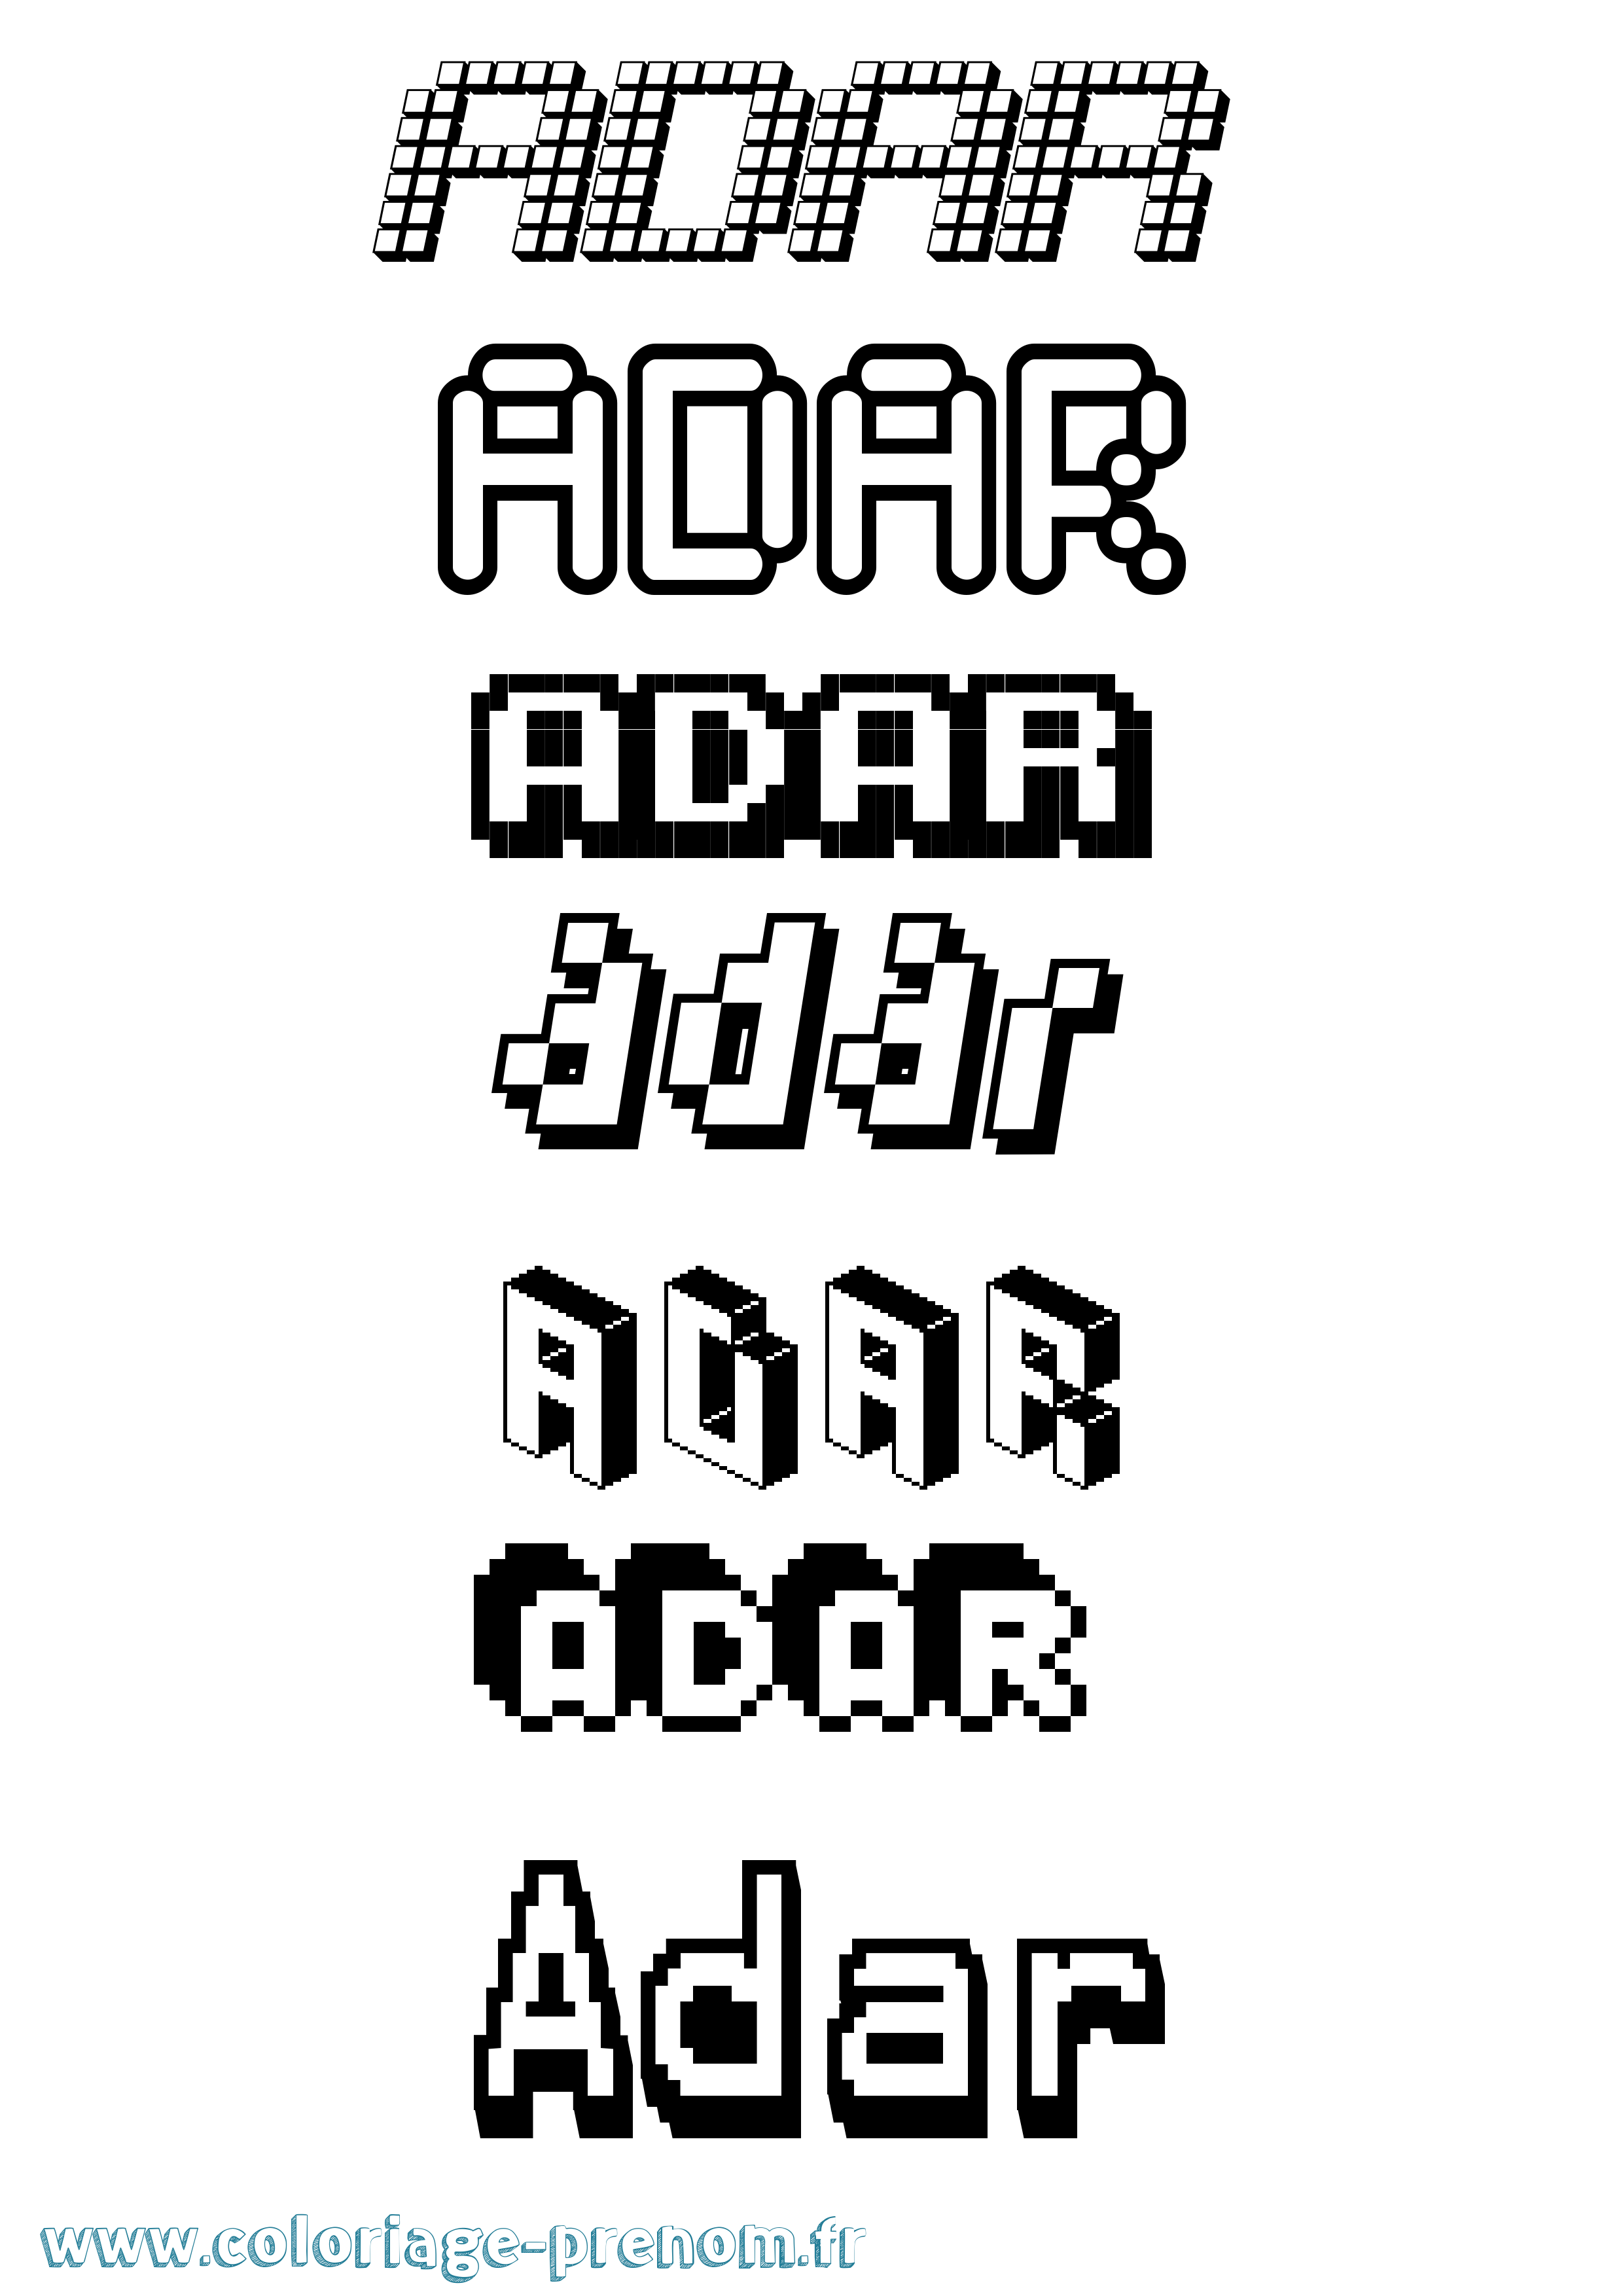 Coloriage prénom Adar Pixel